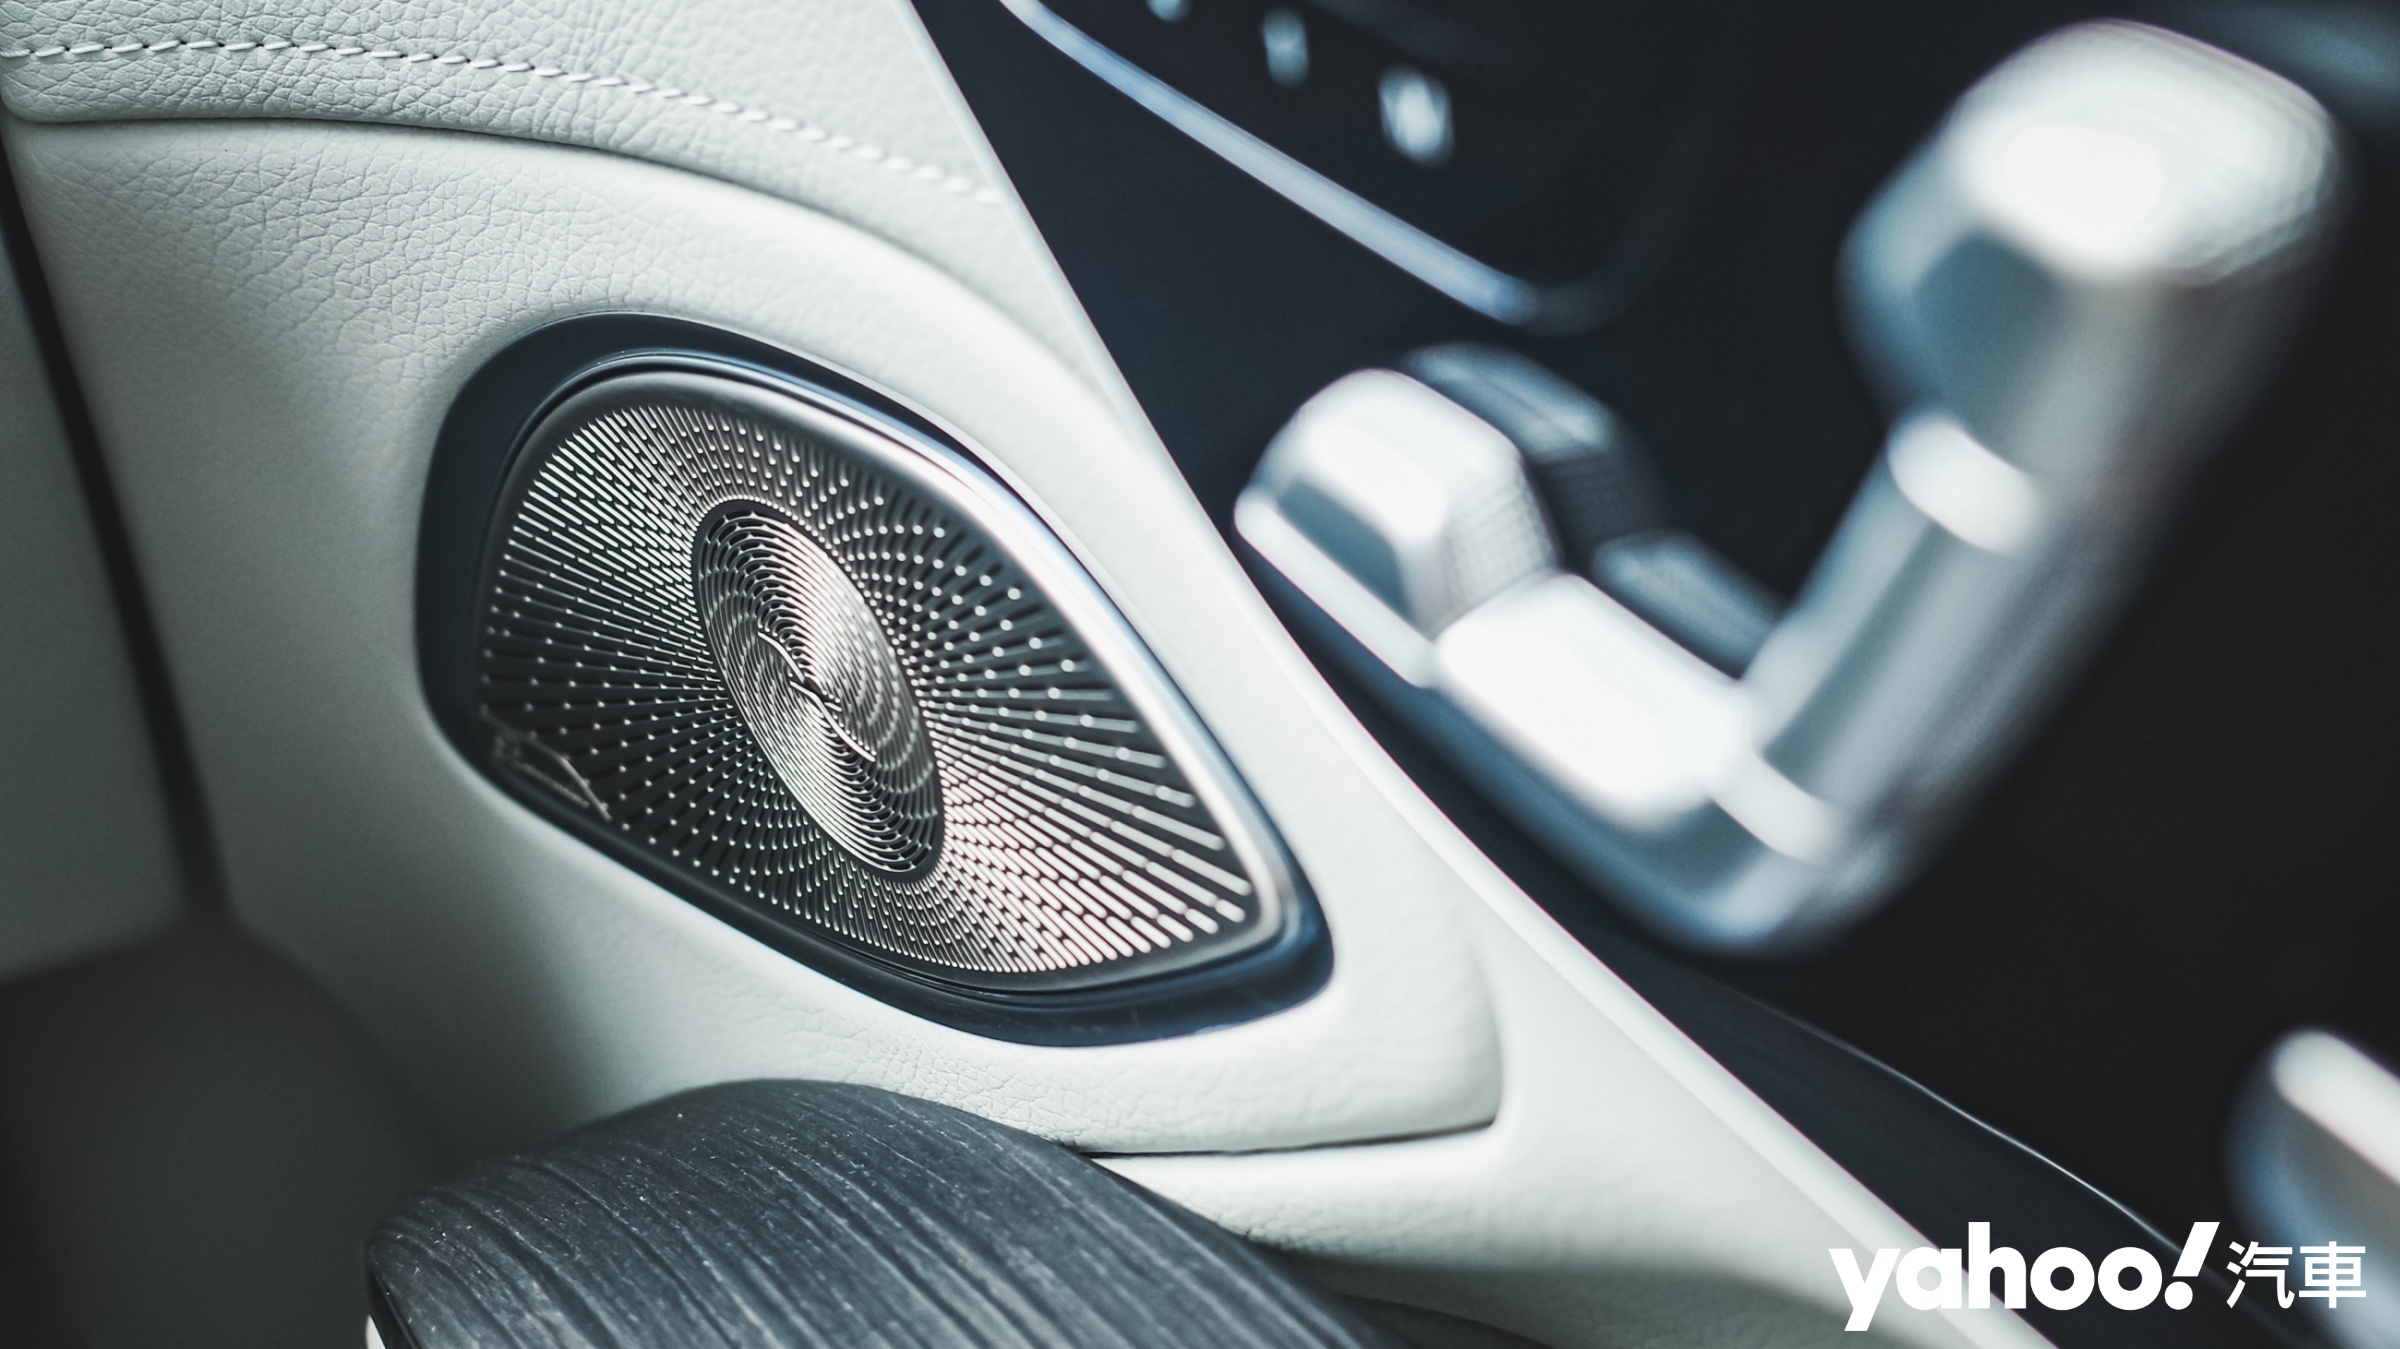 附帶VNC噪音消除、自然音效環繞等功能，音響系統對電動車的重要性更勝過往。